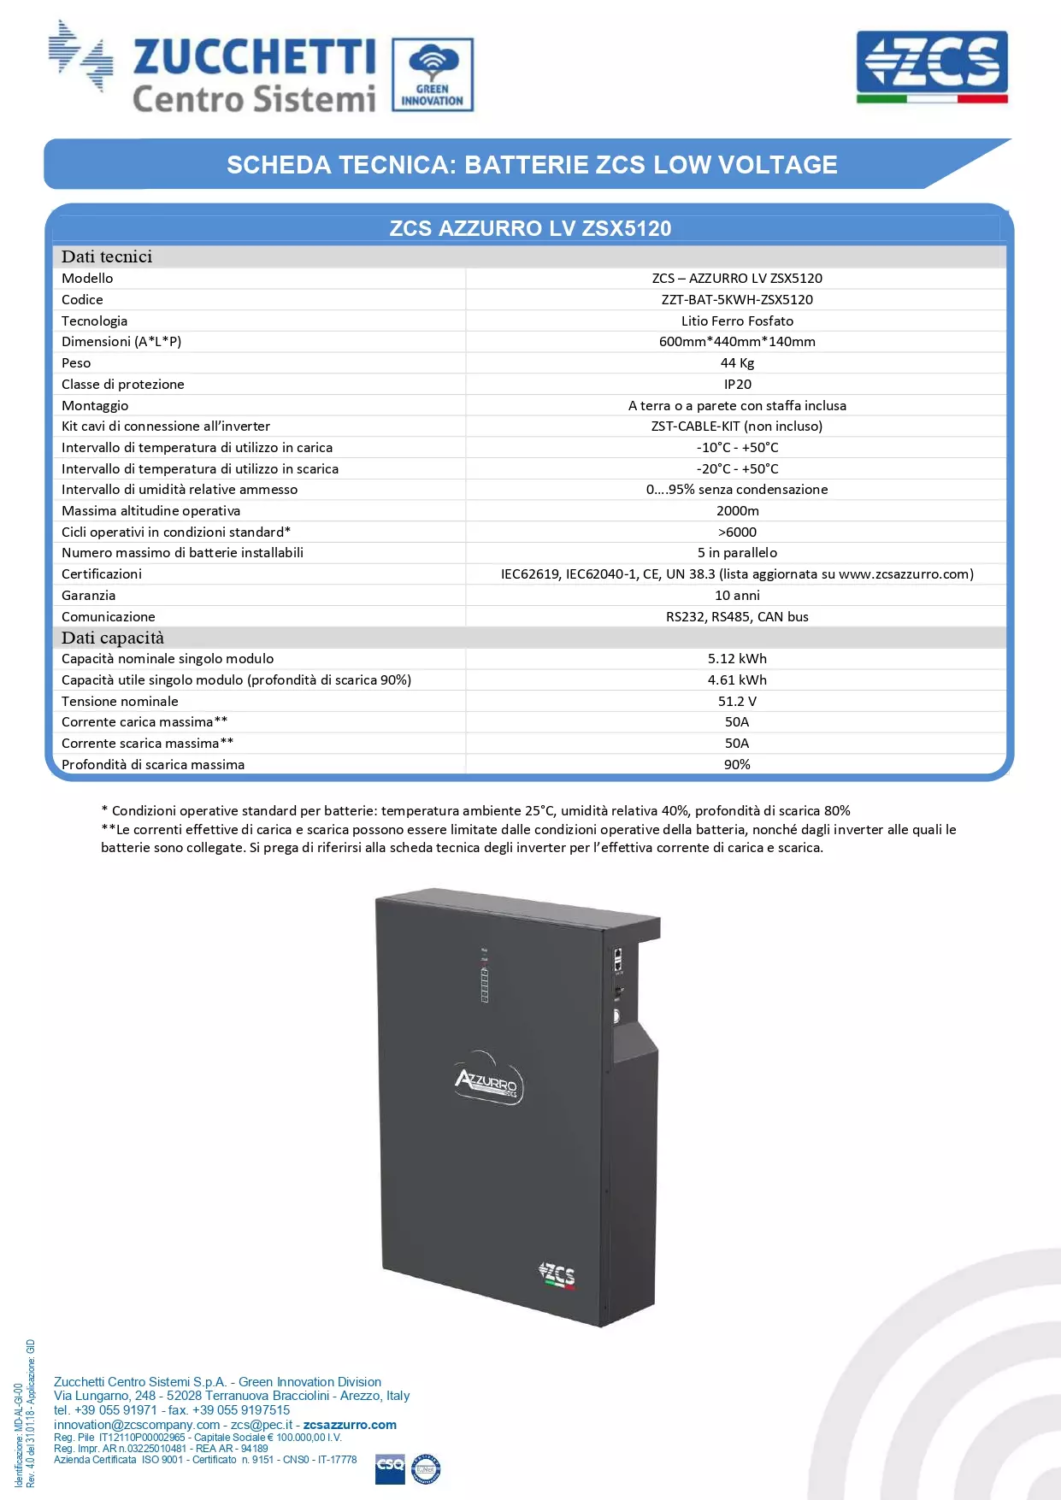 AZZURRO LV ZSX5120 Specifiche tecniche batteria al litio LV al litio ZCS per impianti fotovoltaici con sistemi di accumulo